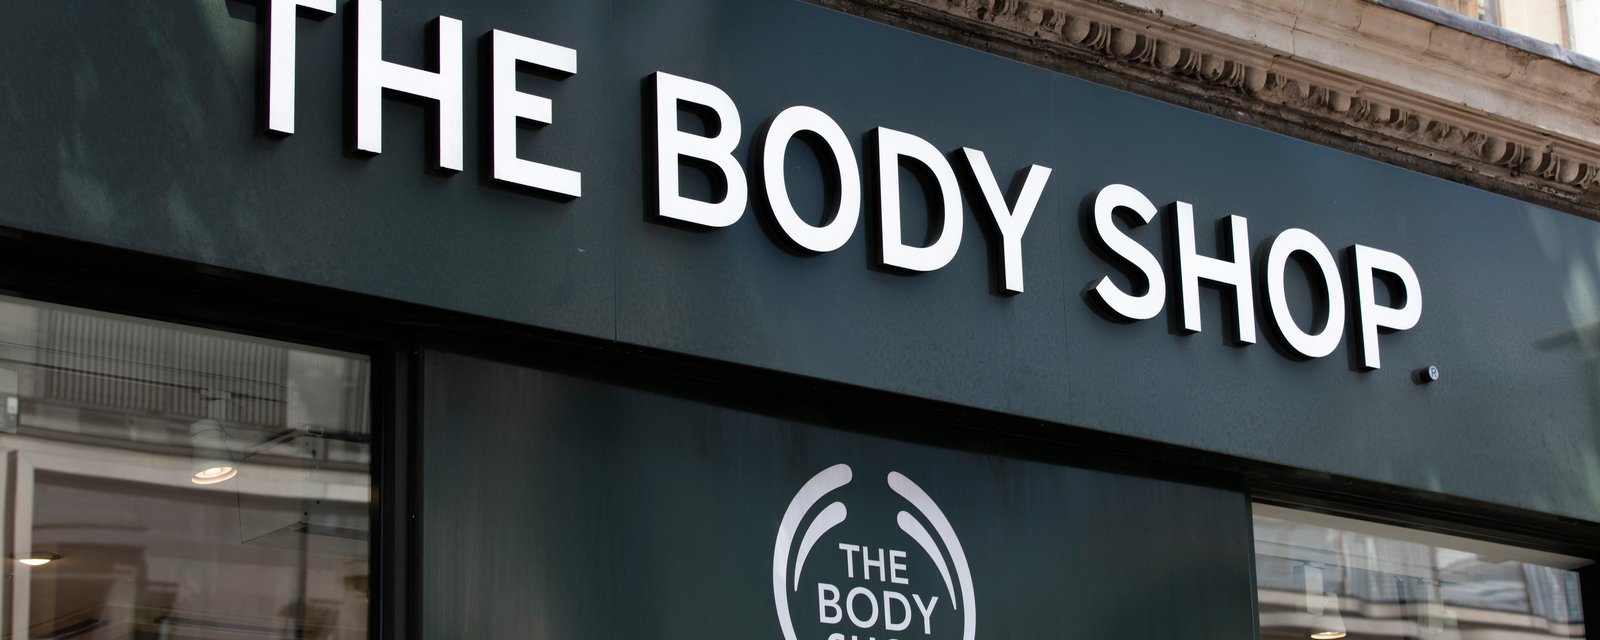 The Body Shop annonce la fermeture de 33 magasins et son avenir est incertain 